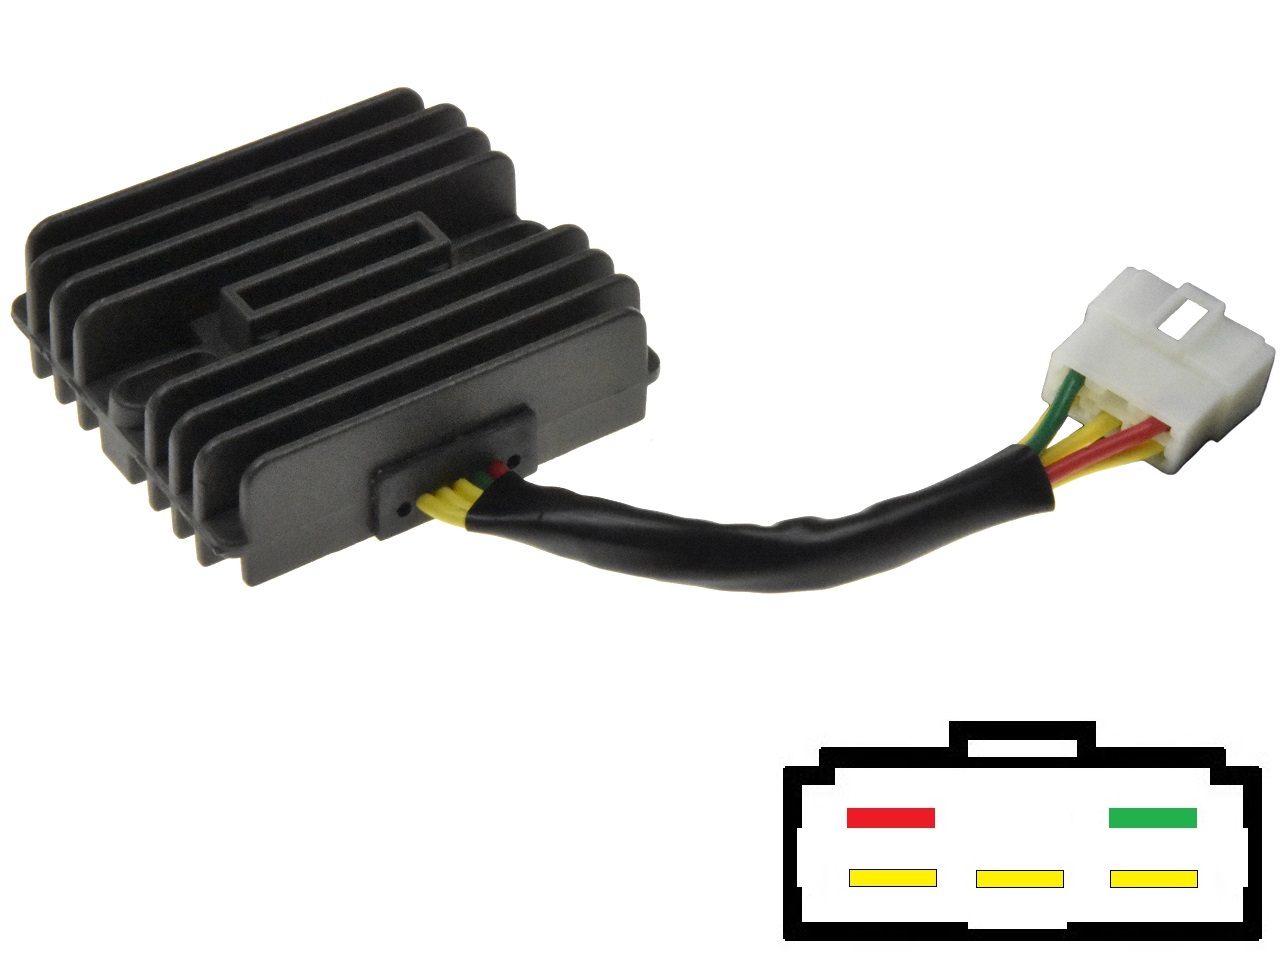 CARR551 Suzuki Kawasaki MOSFET Voltage regulator rectifier - Click Image to Close